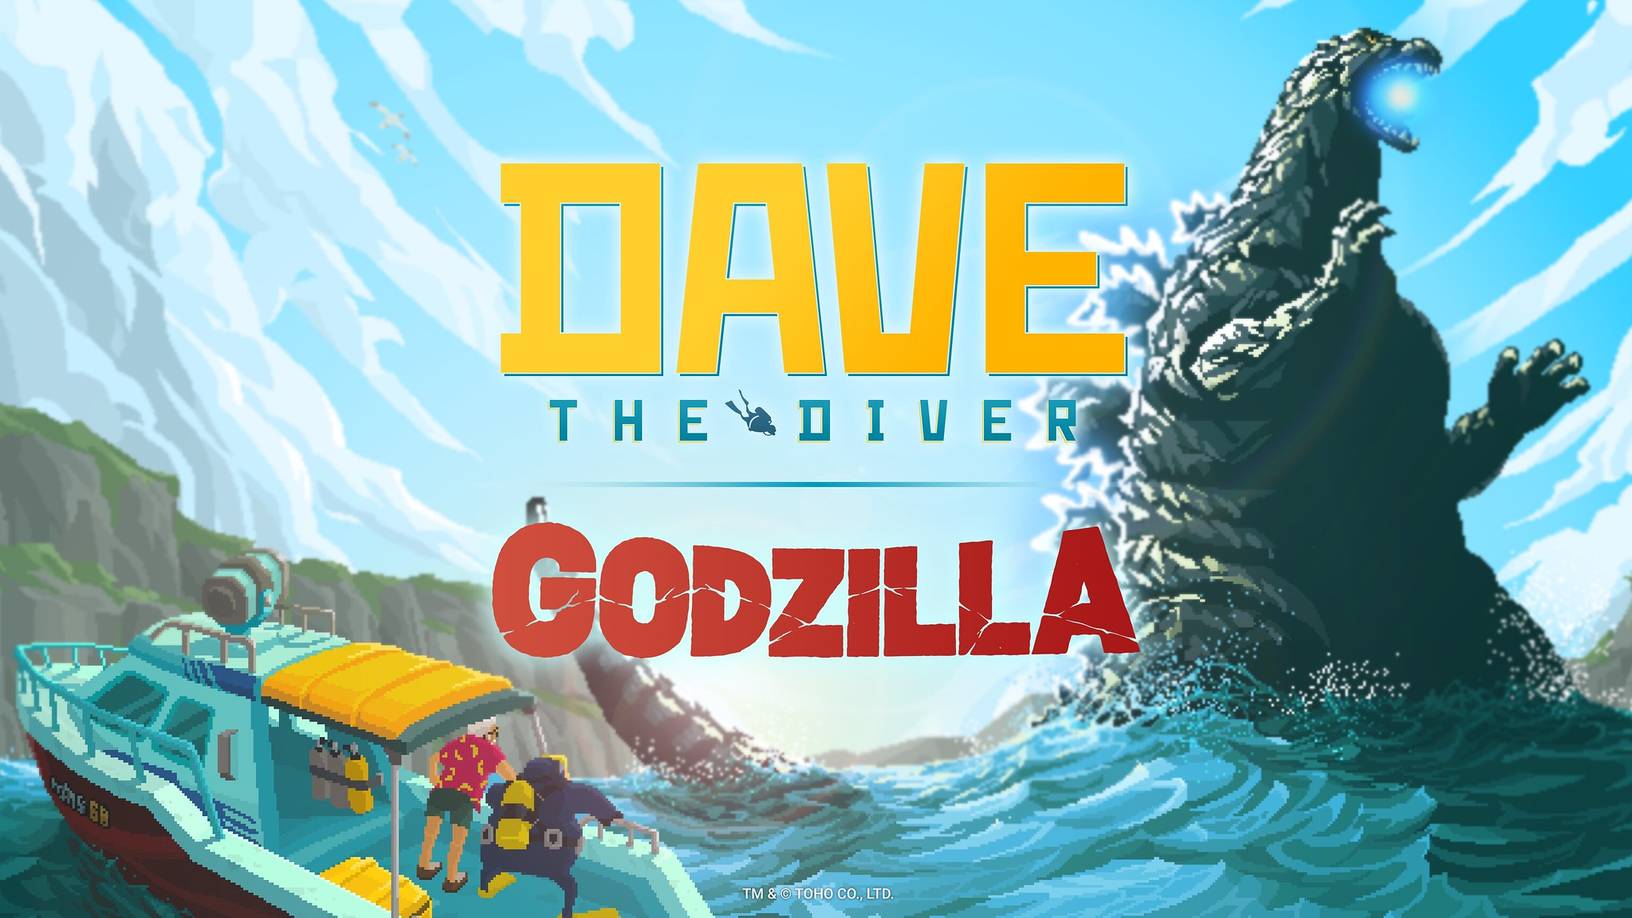 Dave the Diver confronts Godzilla